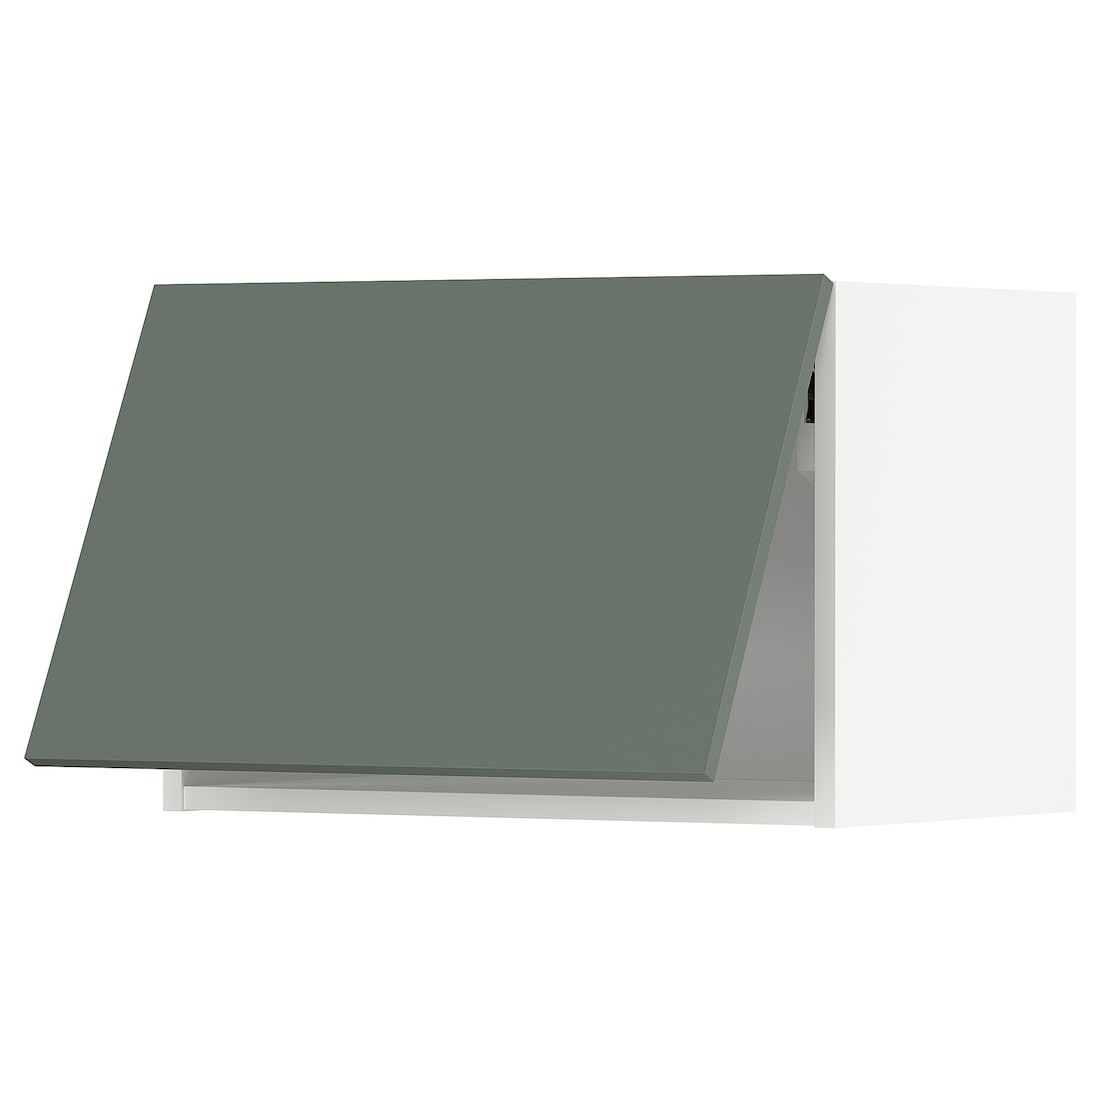 METOD МЕТОД Навесной горизонтальный шкаф, белый / Bodarp серо-зеленый, 60x40 см